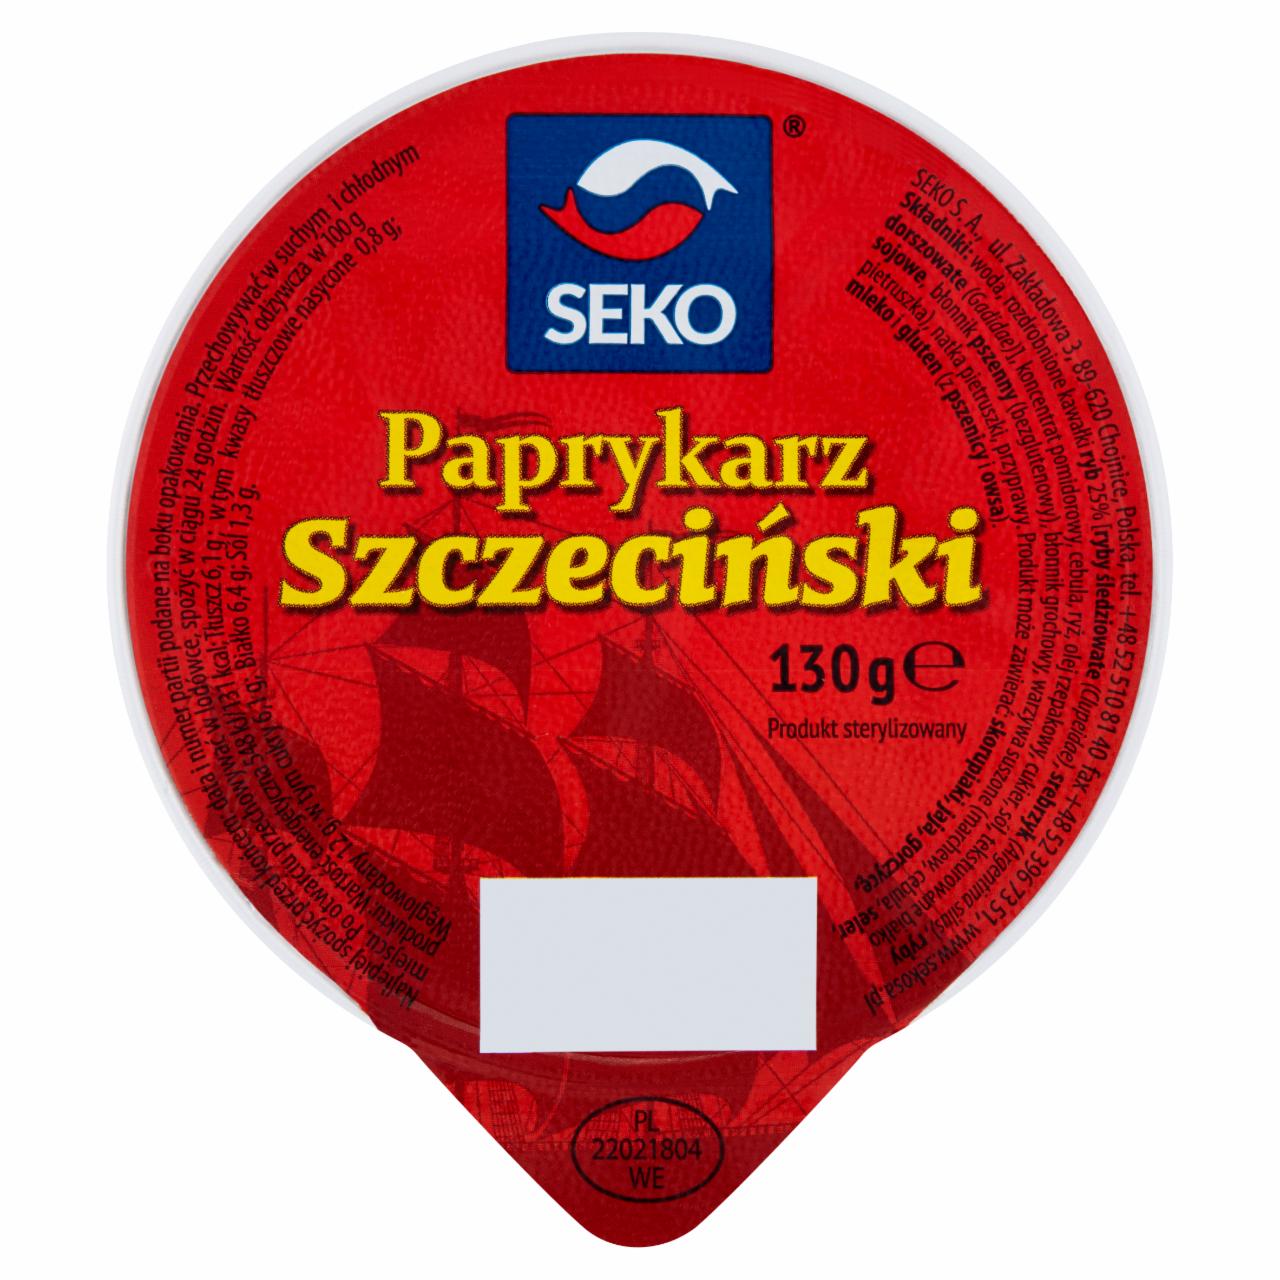 Zdjęcia - Seko Paprykarz szczeciński 130 g